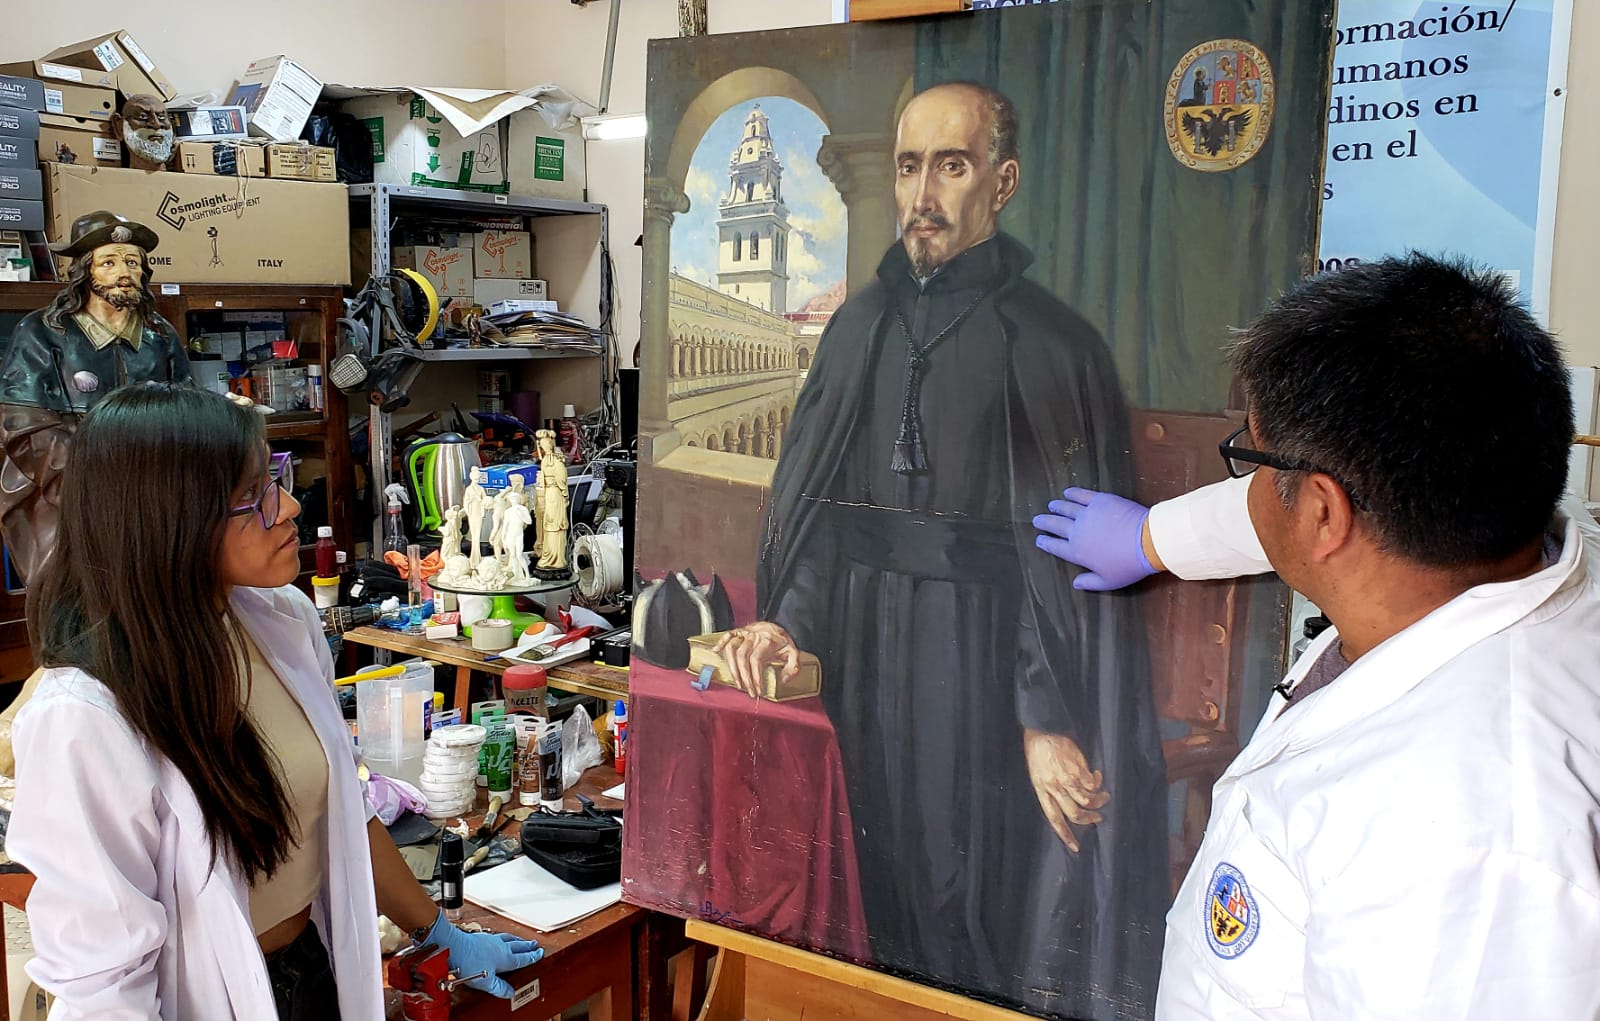 Retrato de Juan de Frías Herrán volverá a su lugar de origen totalmente restaurado